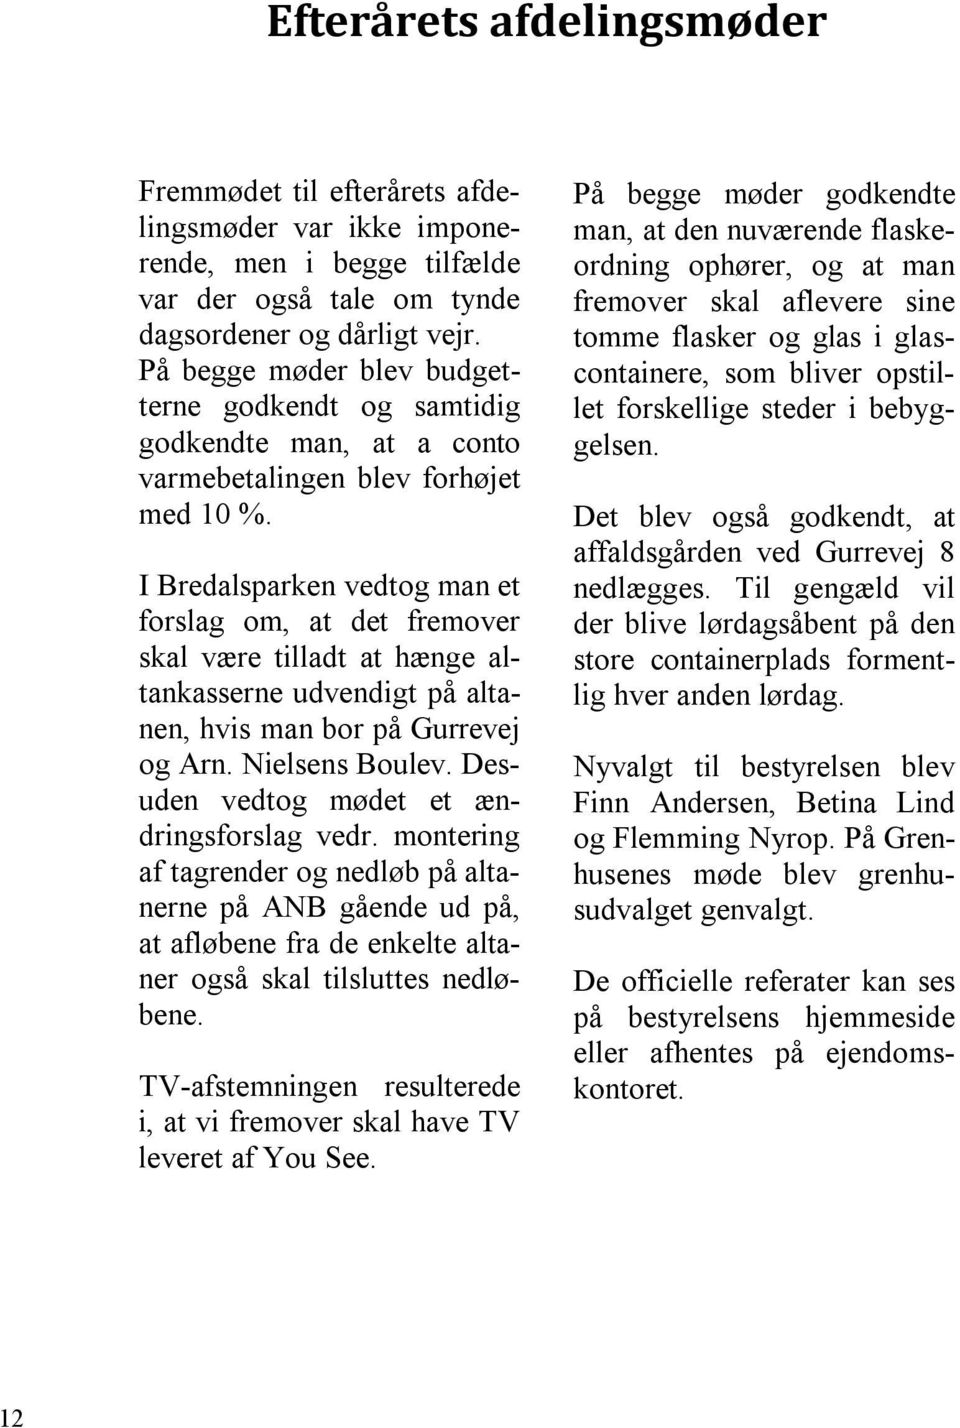 I Bredalsparken vedtog man et forslag om, at det fremover skal være tilladt at hænge altankasserne udvendigt på altanen, hvis man bor på Gurrevej og Arn. Nielsens Boulev.